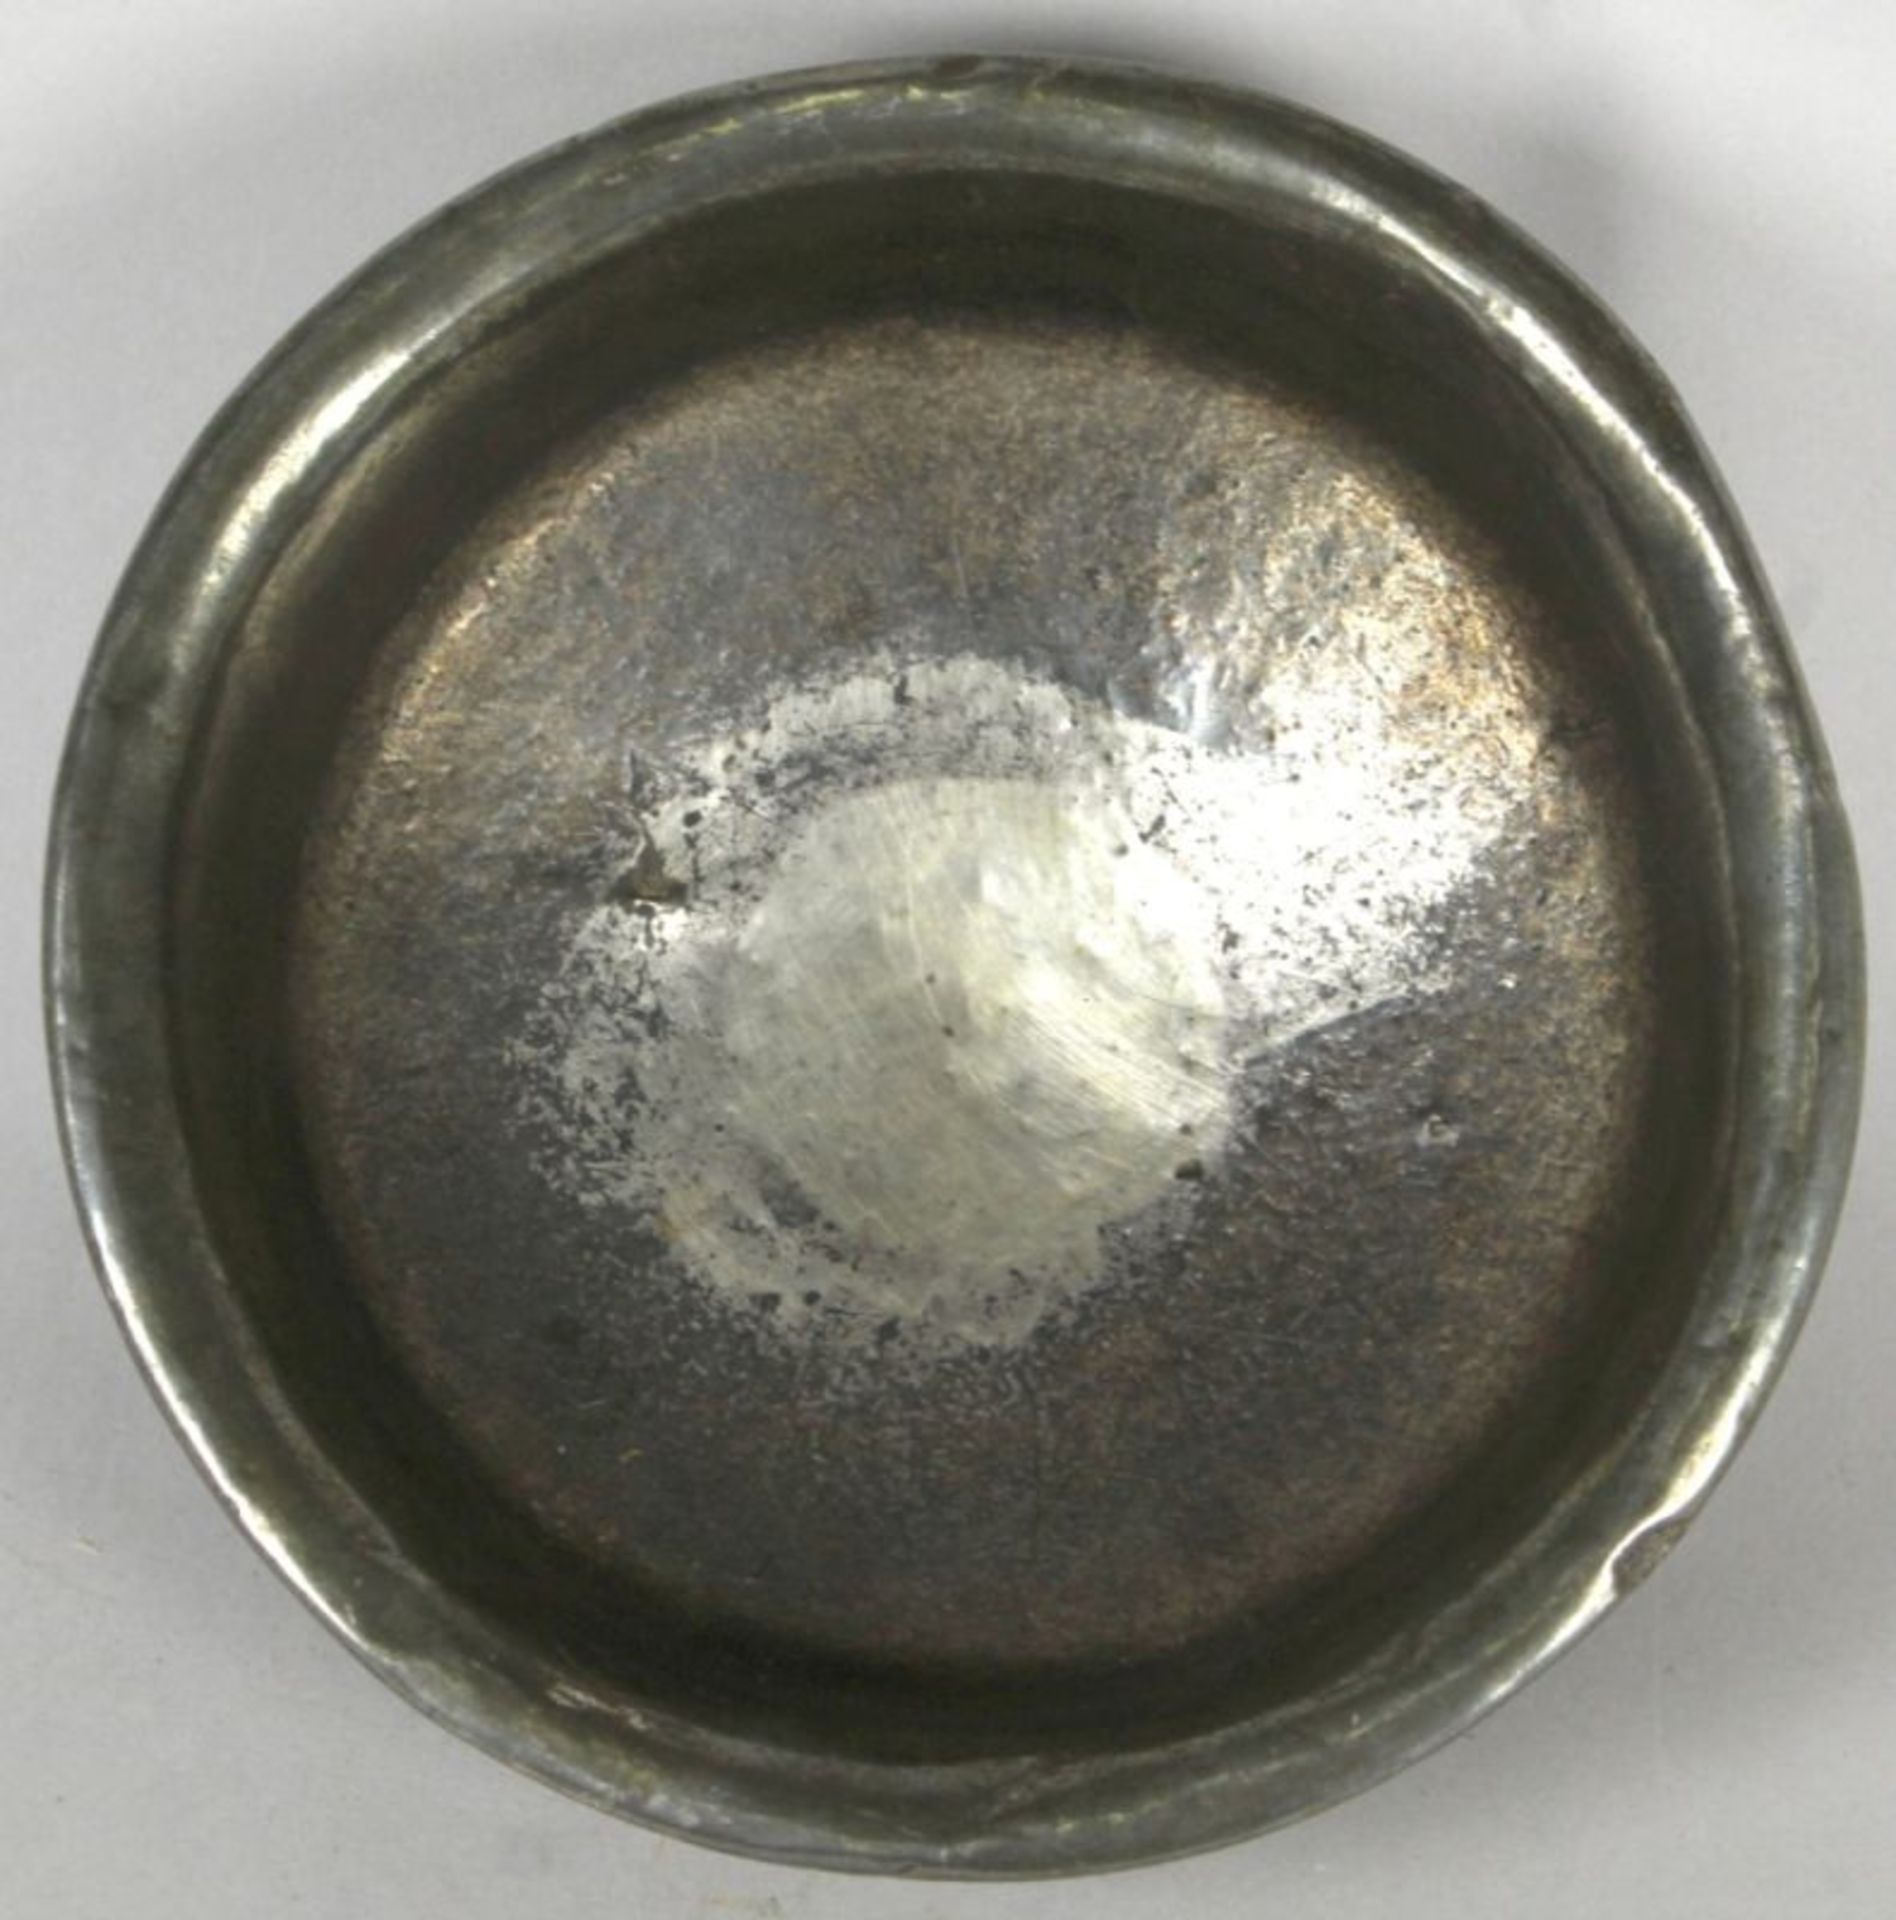 Zierschale, Tibet, 18. Jh., Wurzelholz, Abschlußbereiche mit Silbermontur, im unterenBereich mit - Bild 2 aus 3